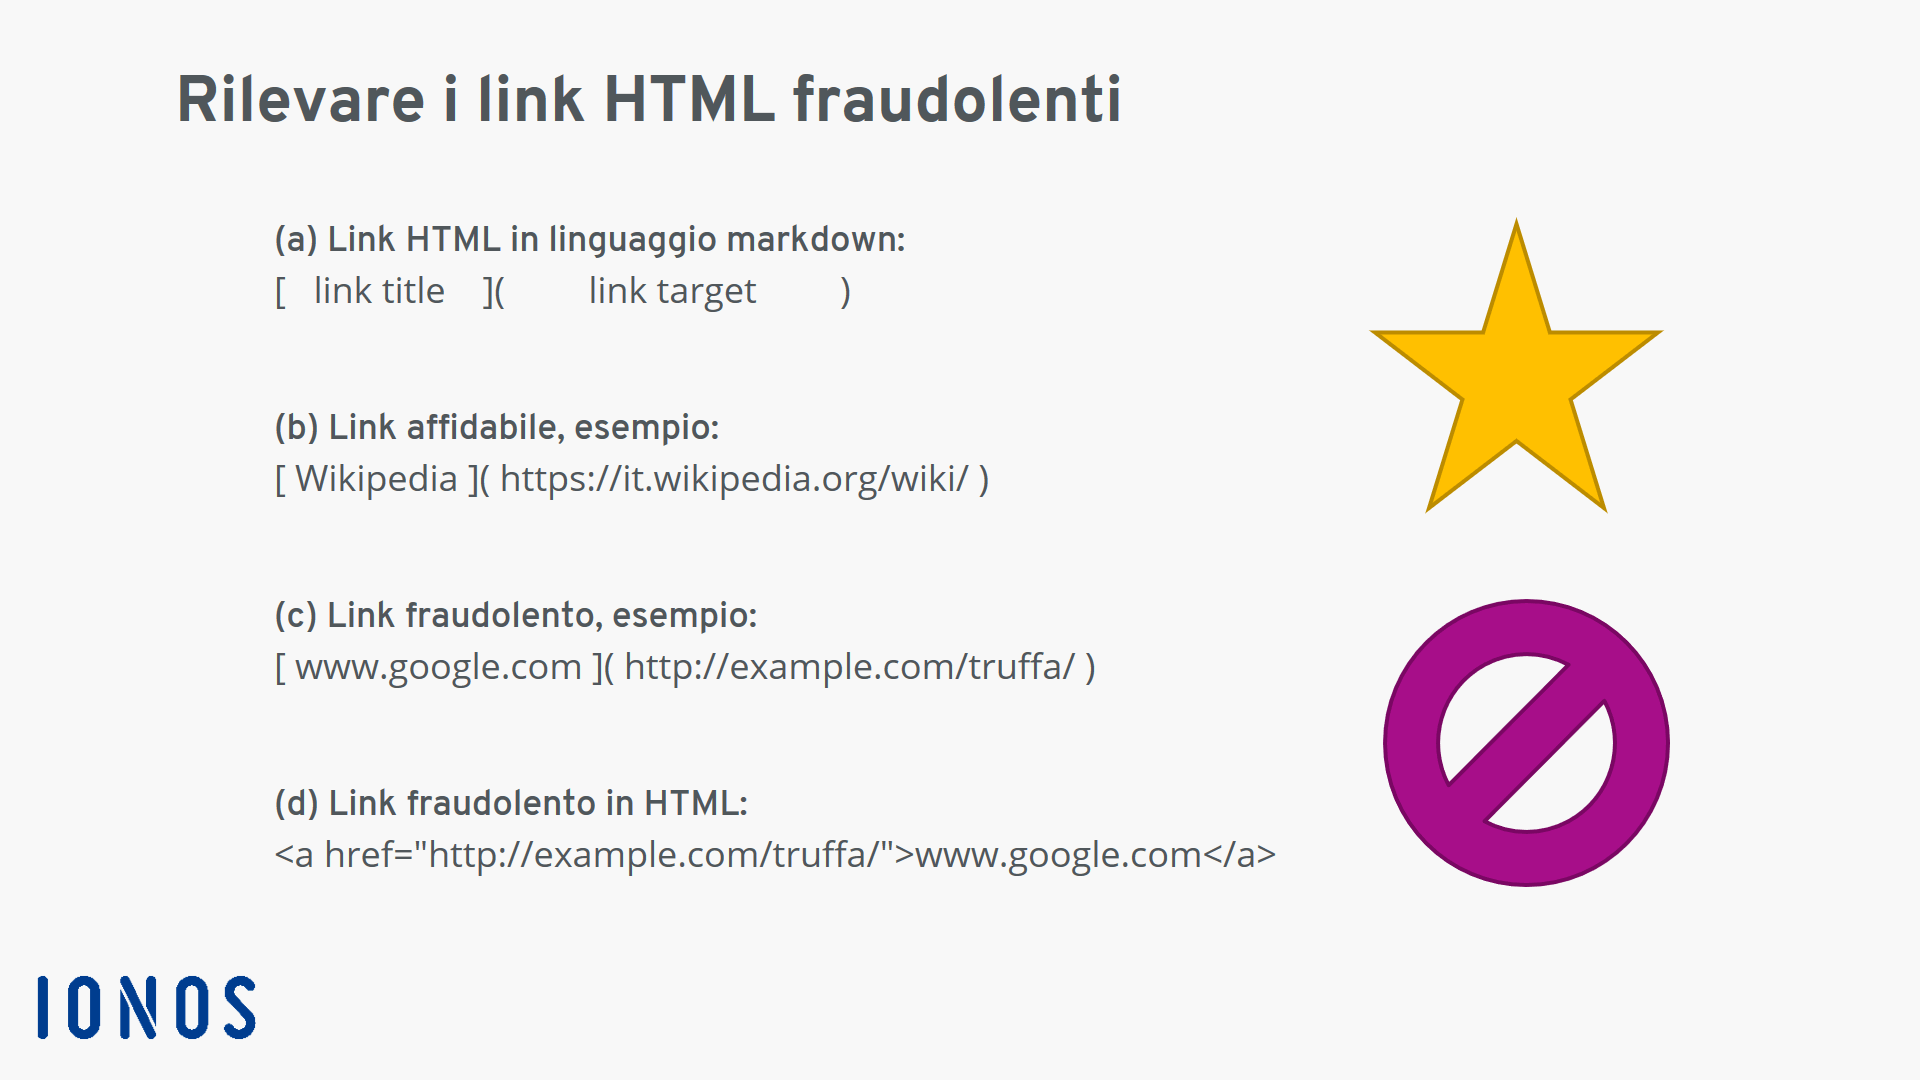 Struttura schematica di un link HTML